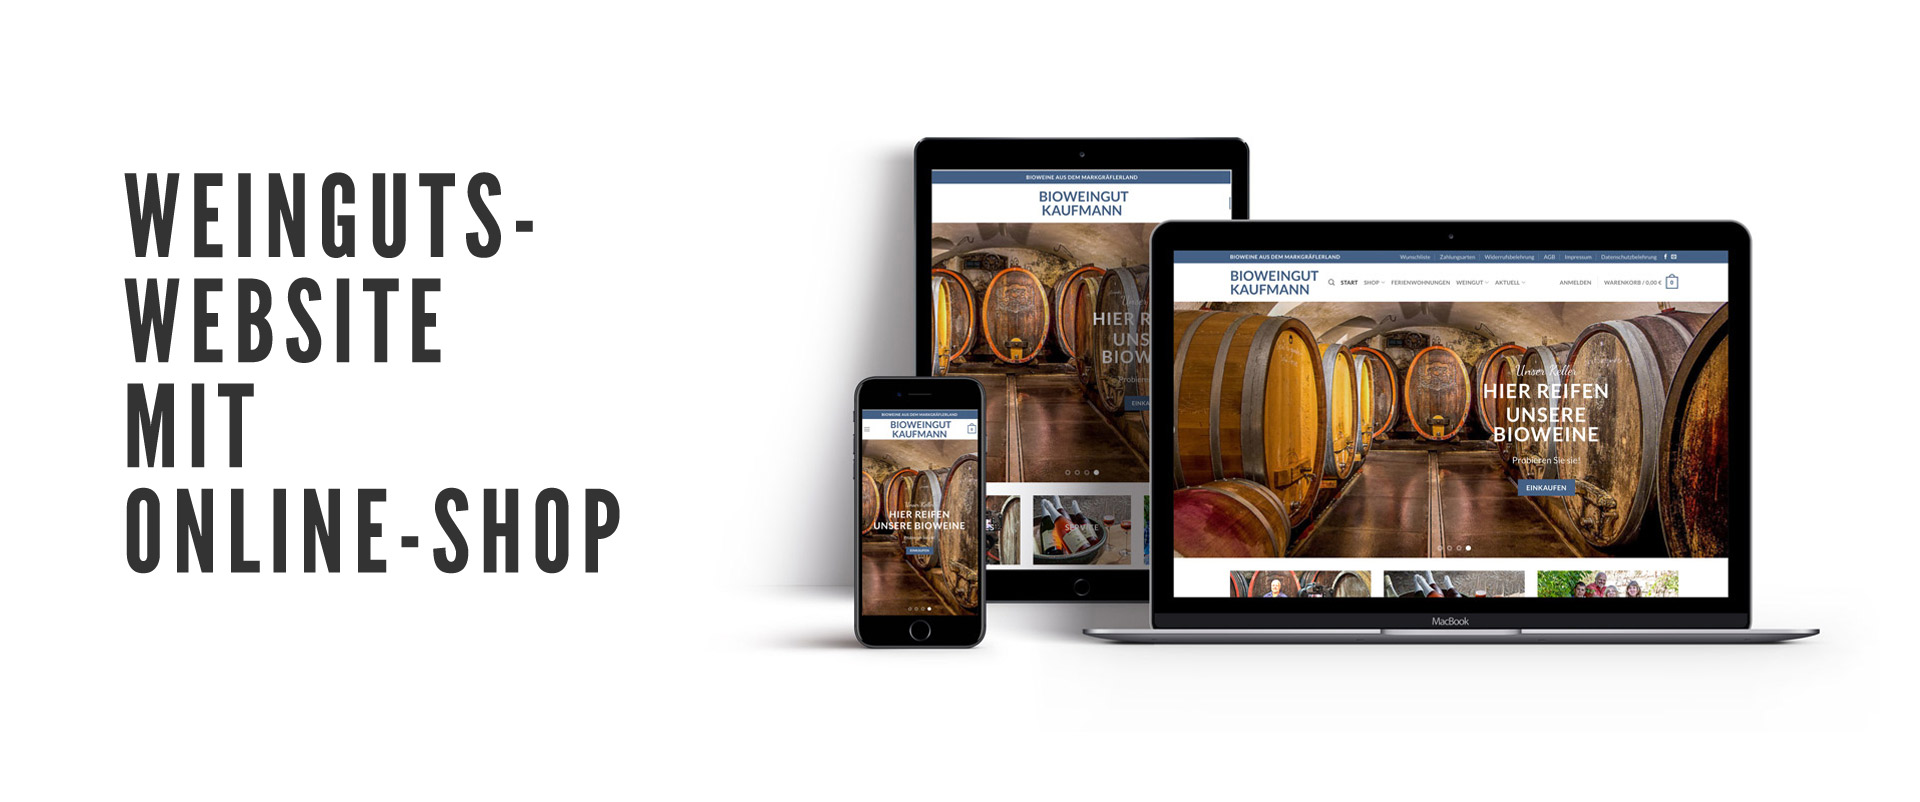 Moderne Weinguts-Website für alle Bildschirmgrößen.